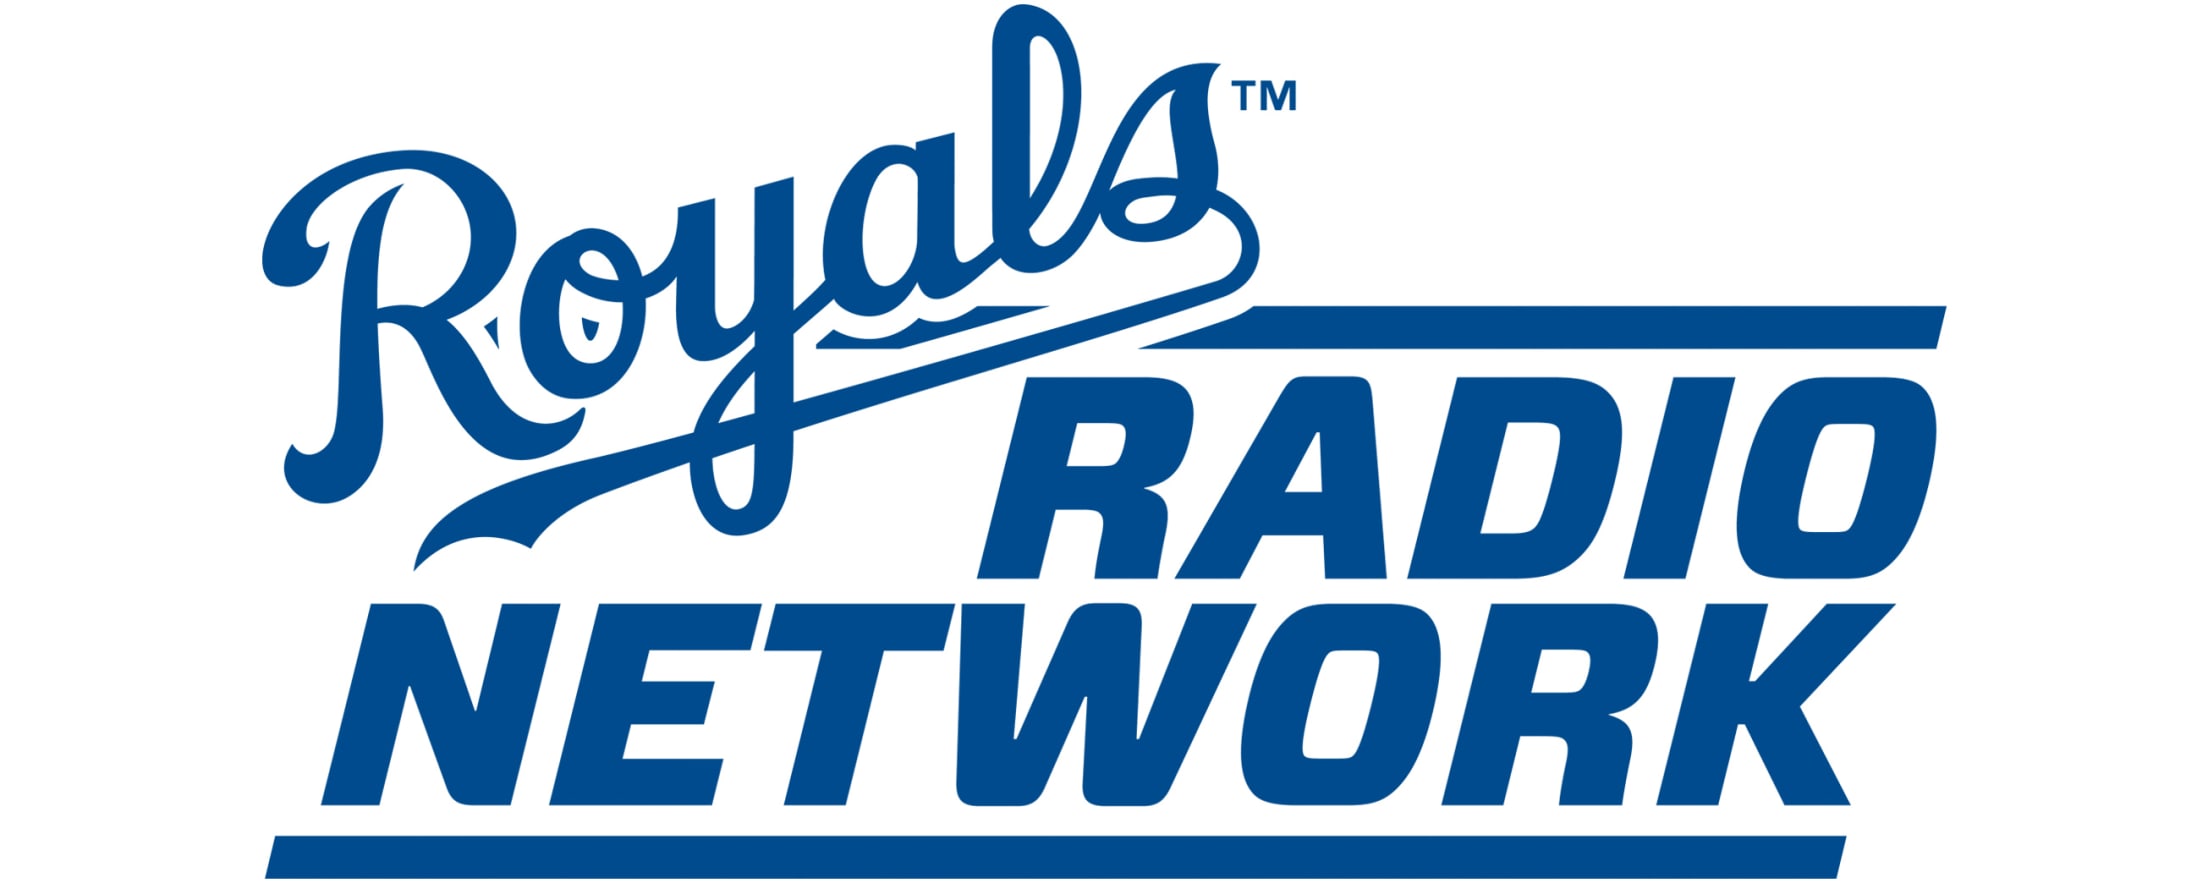 Royals Radio Network Kansas City Royals